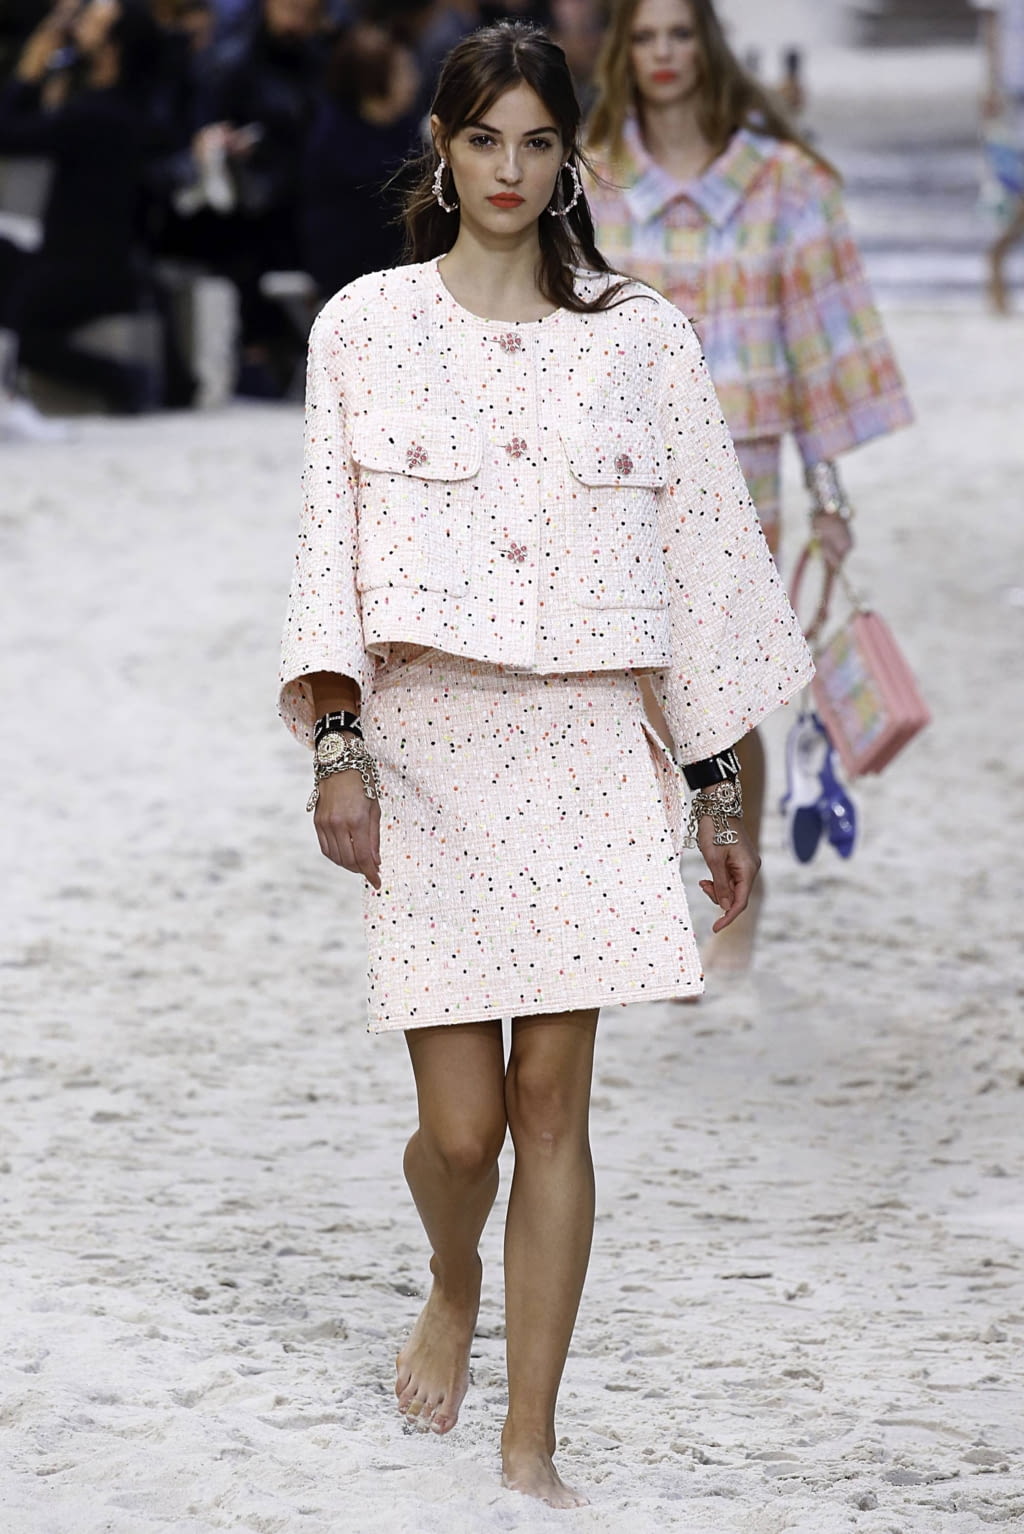 Chanel S/S19 womenswear #10 - Tagwalk: The Fashion Search Engine